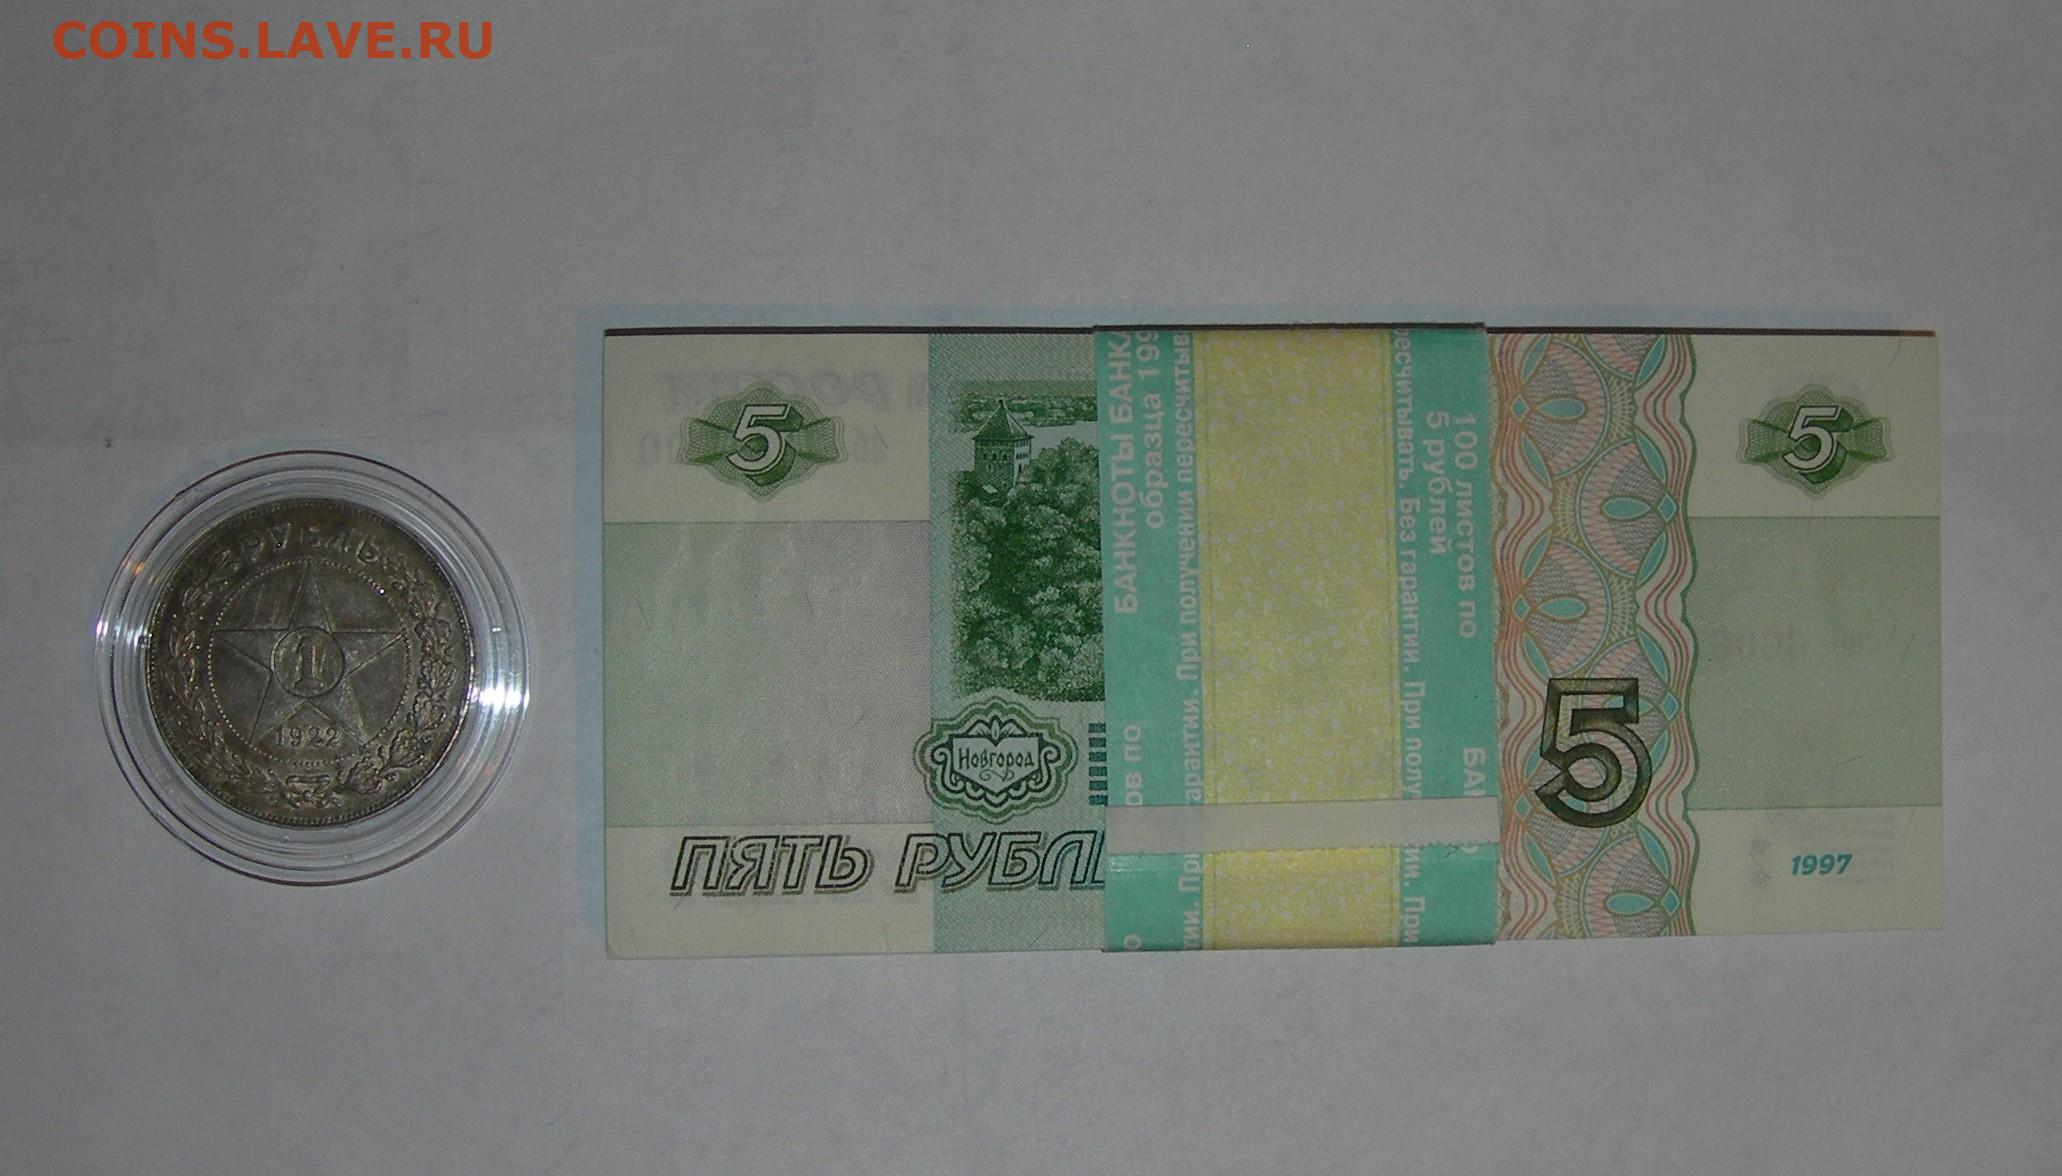 5 рублей 97 года. 5 Рублей 1997 корешок. 5 Рублей 1997. 5 Рублей 1997 года. Пять рублей 1997 года.